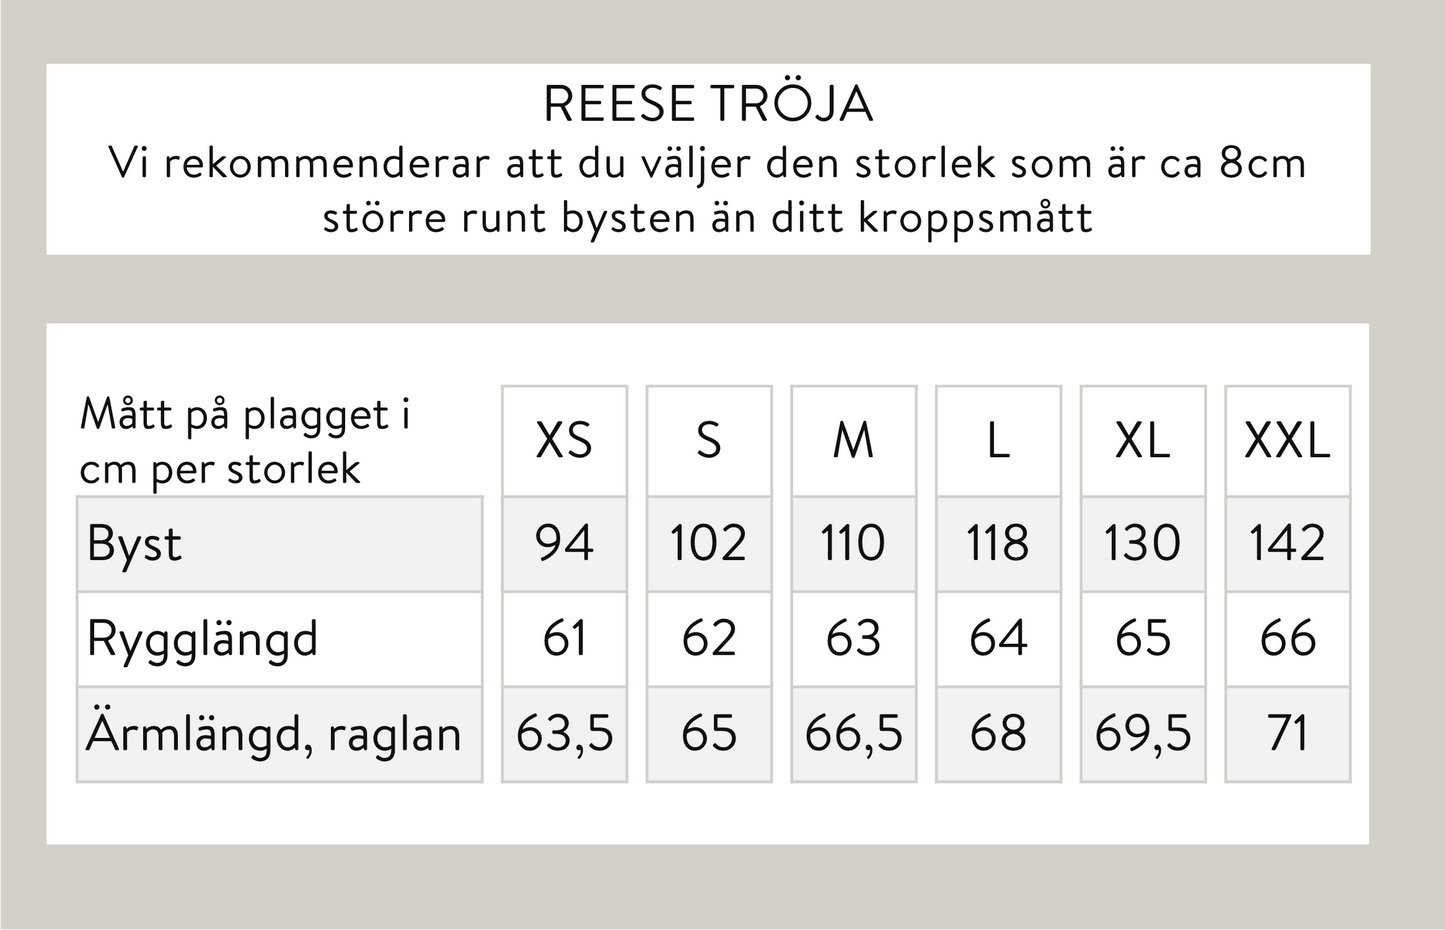 Reese tröja - Korall